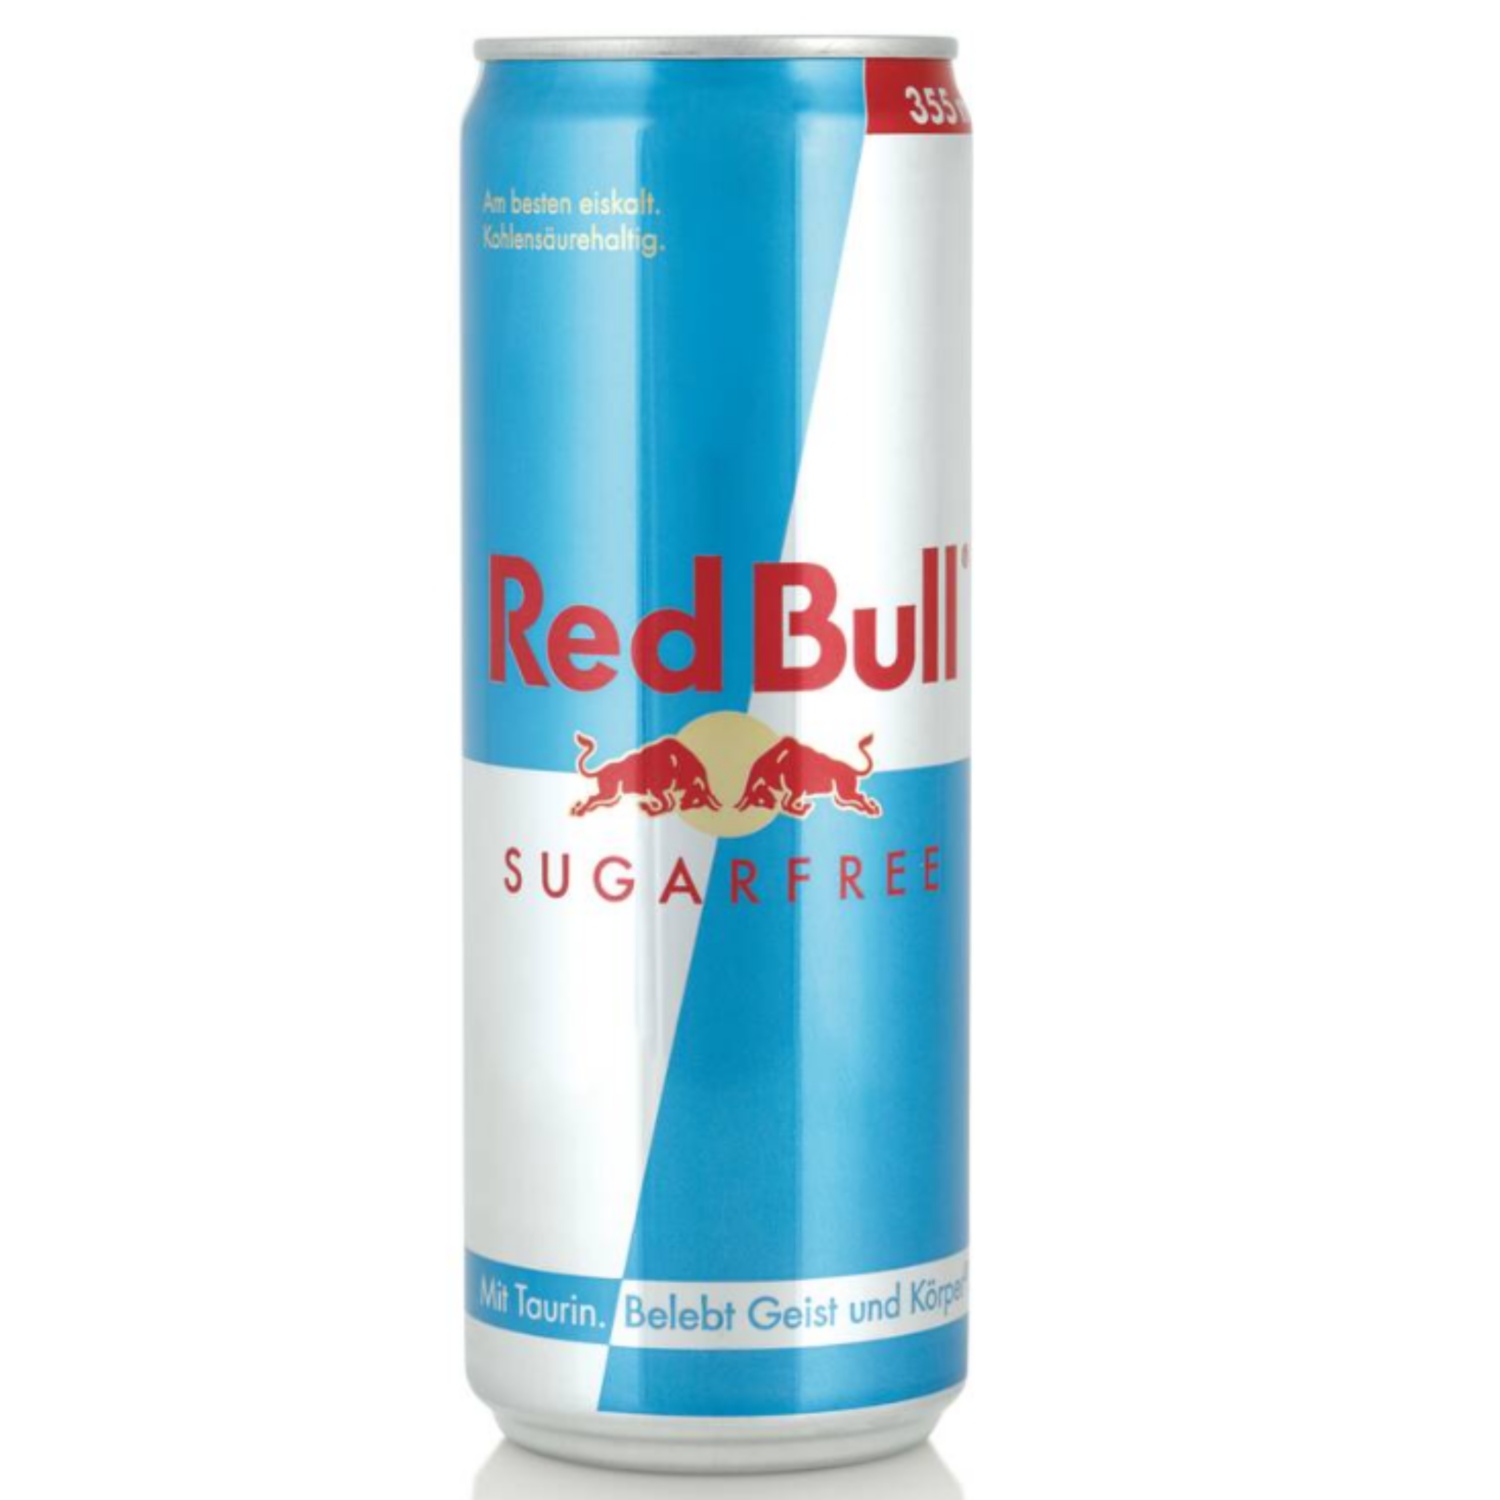 RED BULL Red Bull, Sugarfree